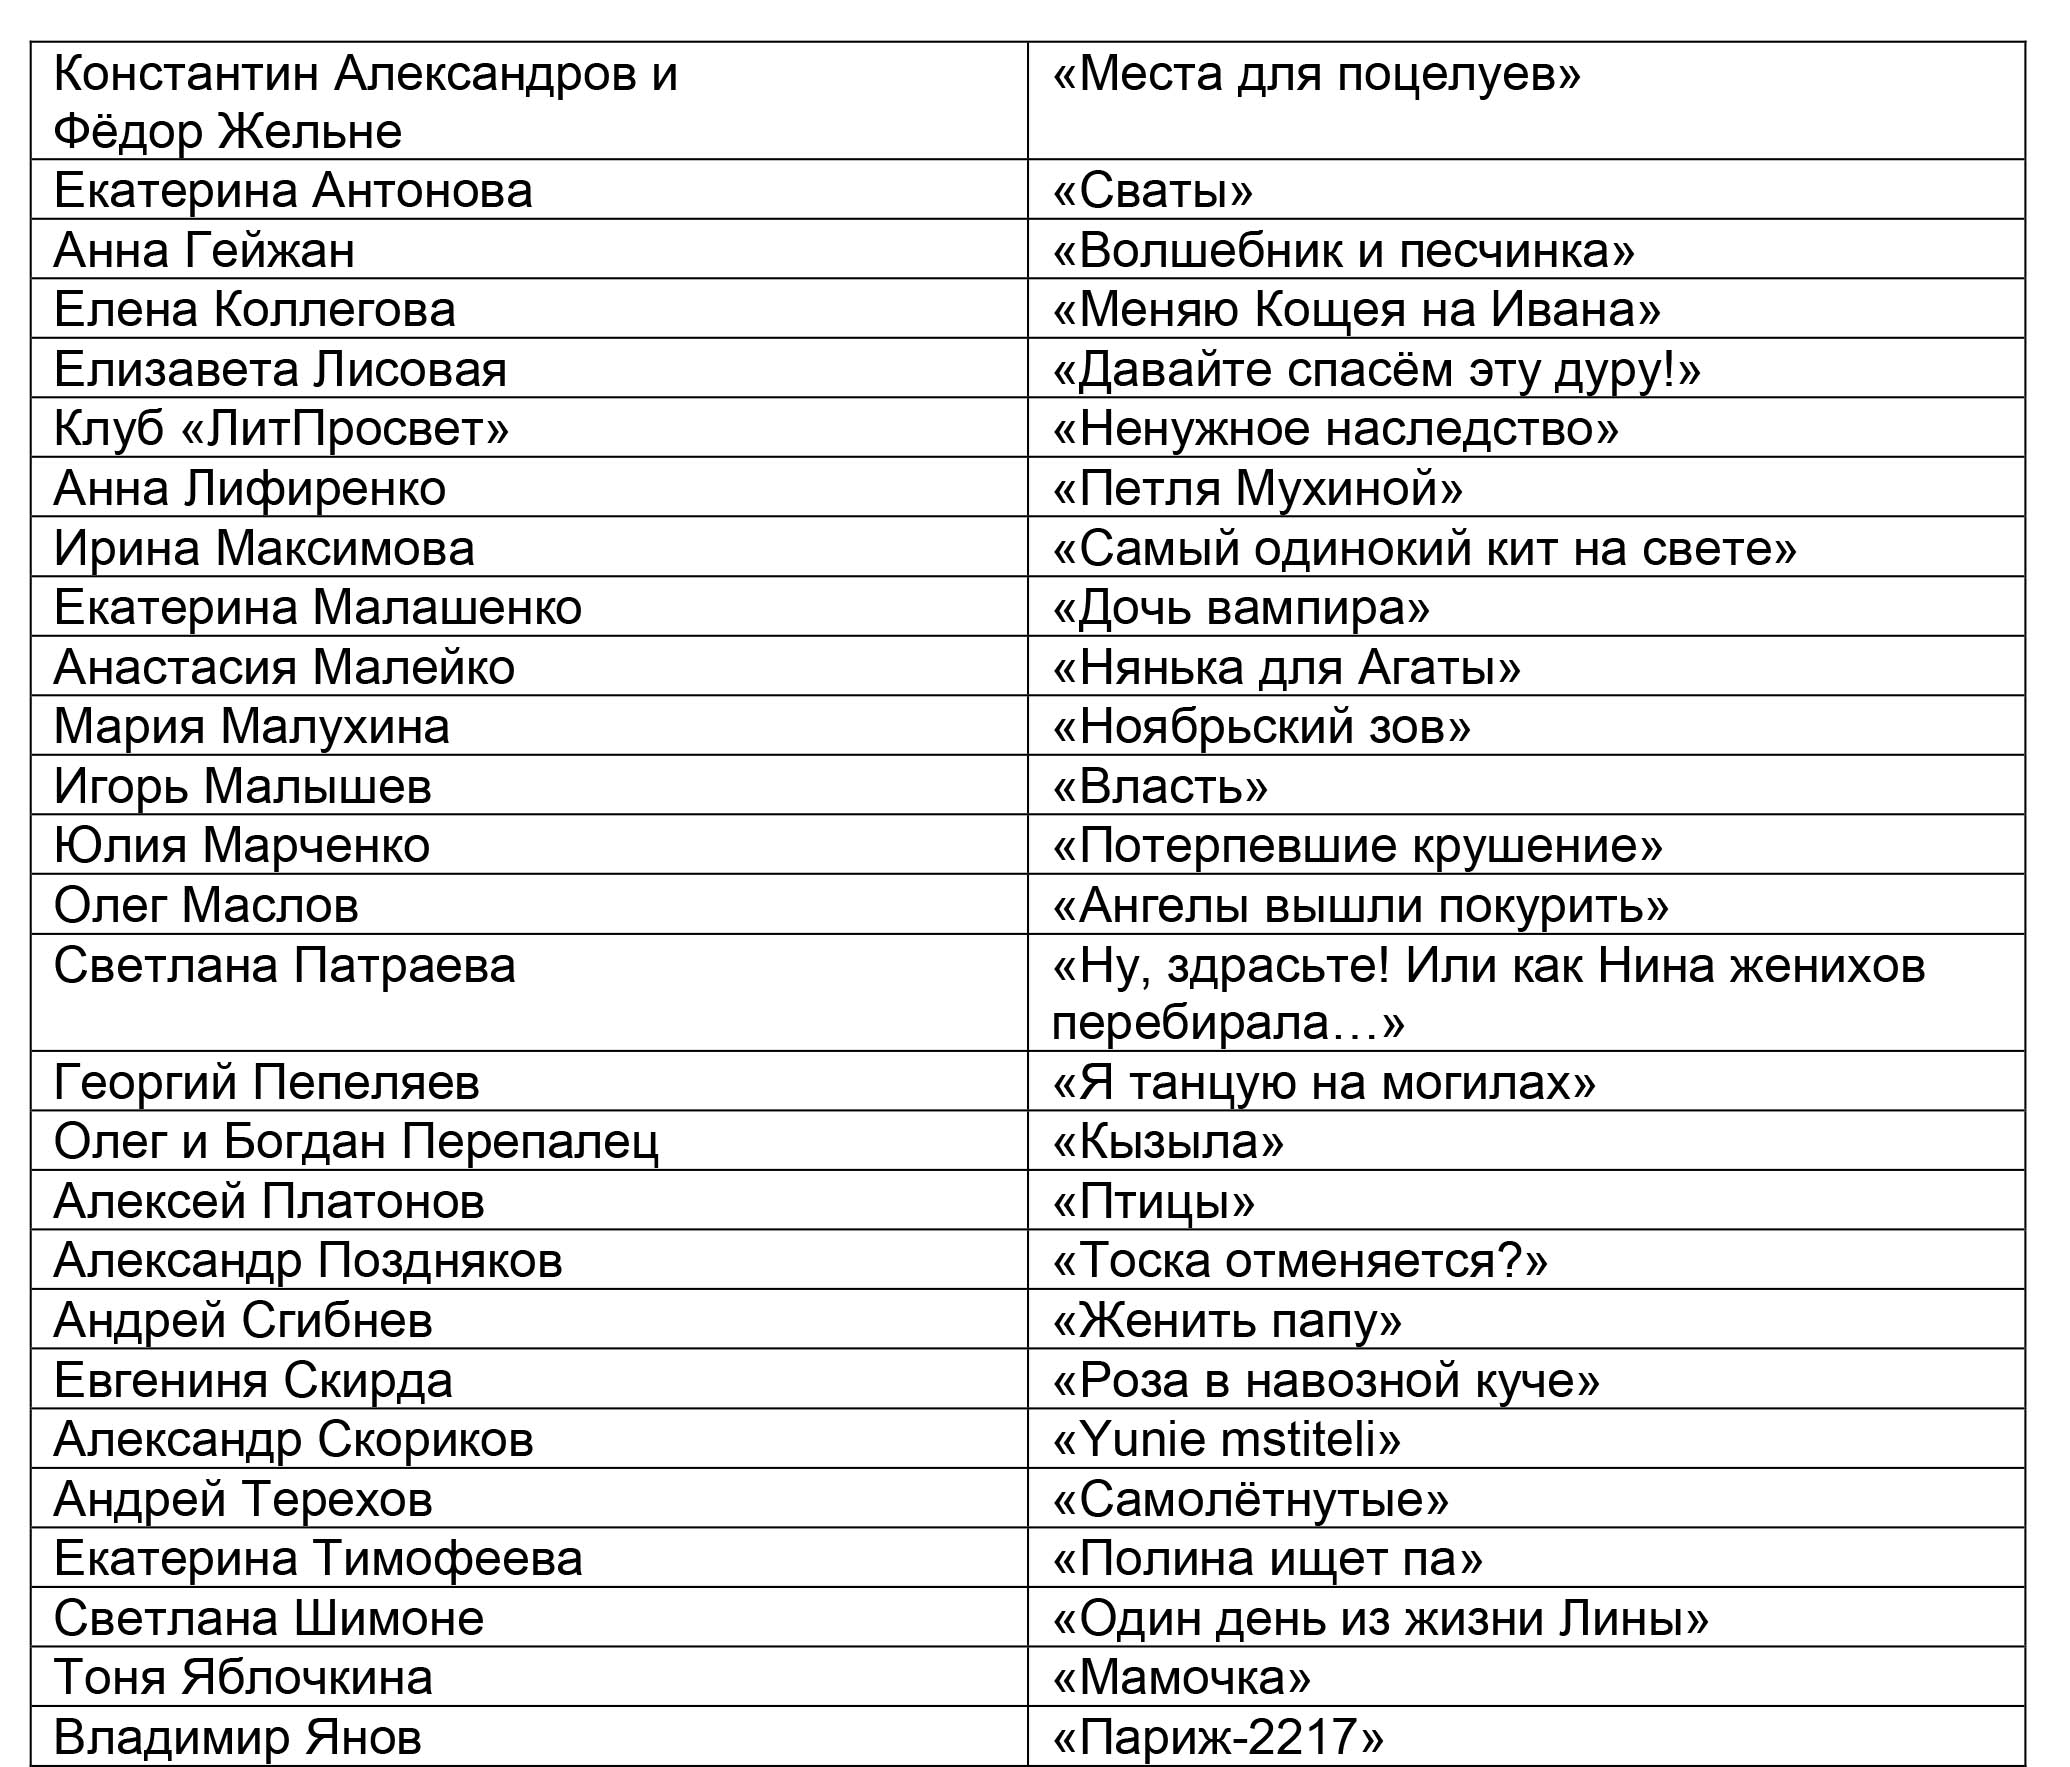 20-й Международный конкурс современной русскоязычной драматургии «Действующие лица» объявил длинный список. 